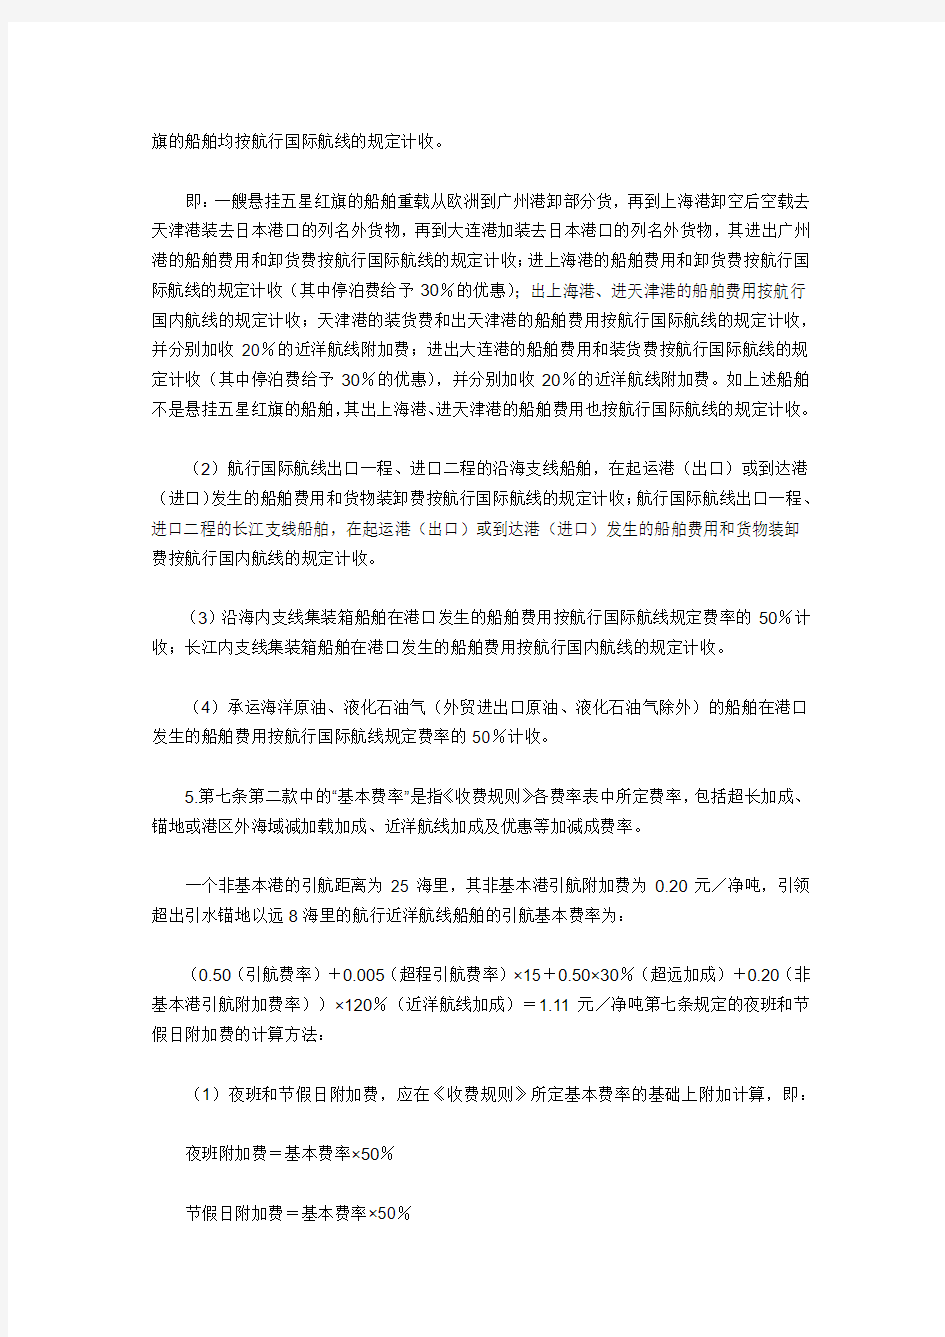 《中华人民共和国交通部港口收费规则(外贸部分)》解释